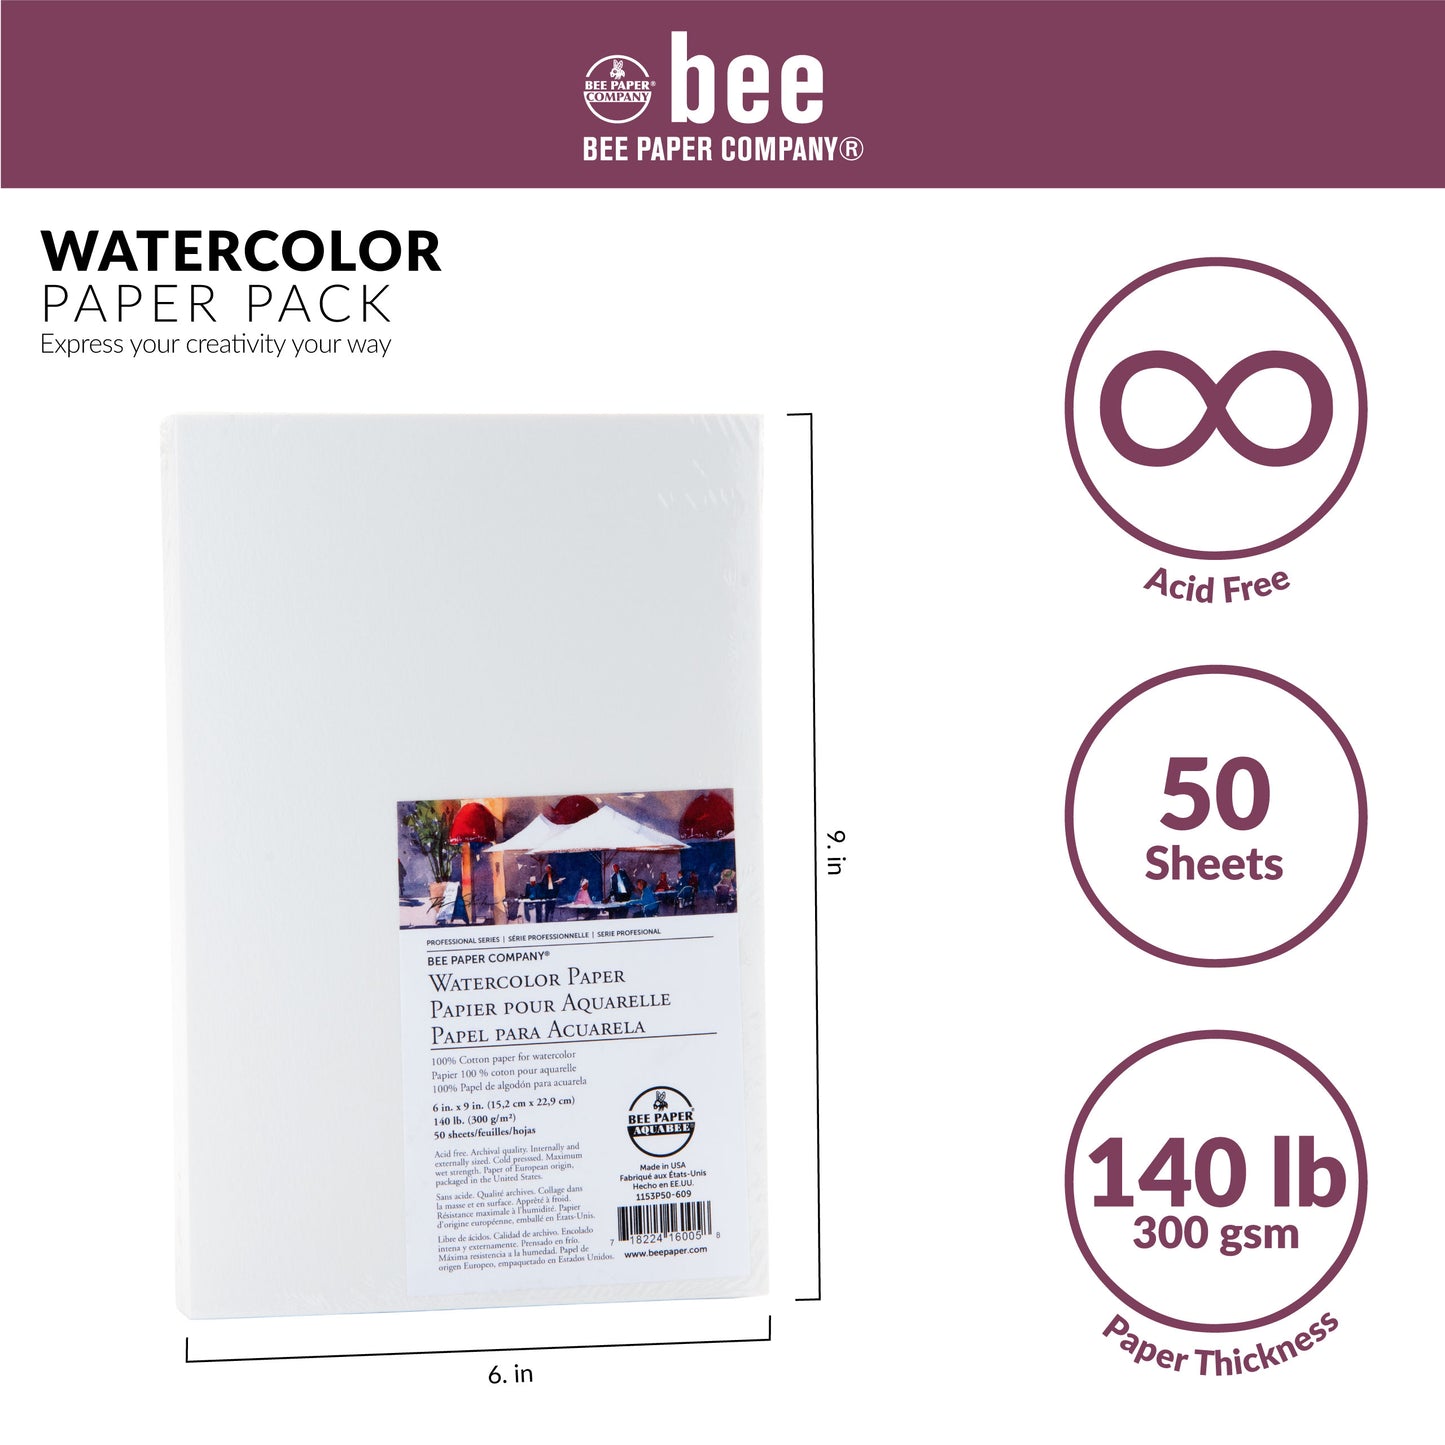 100% Cotton Watercolor Paper – 140 lb.